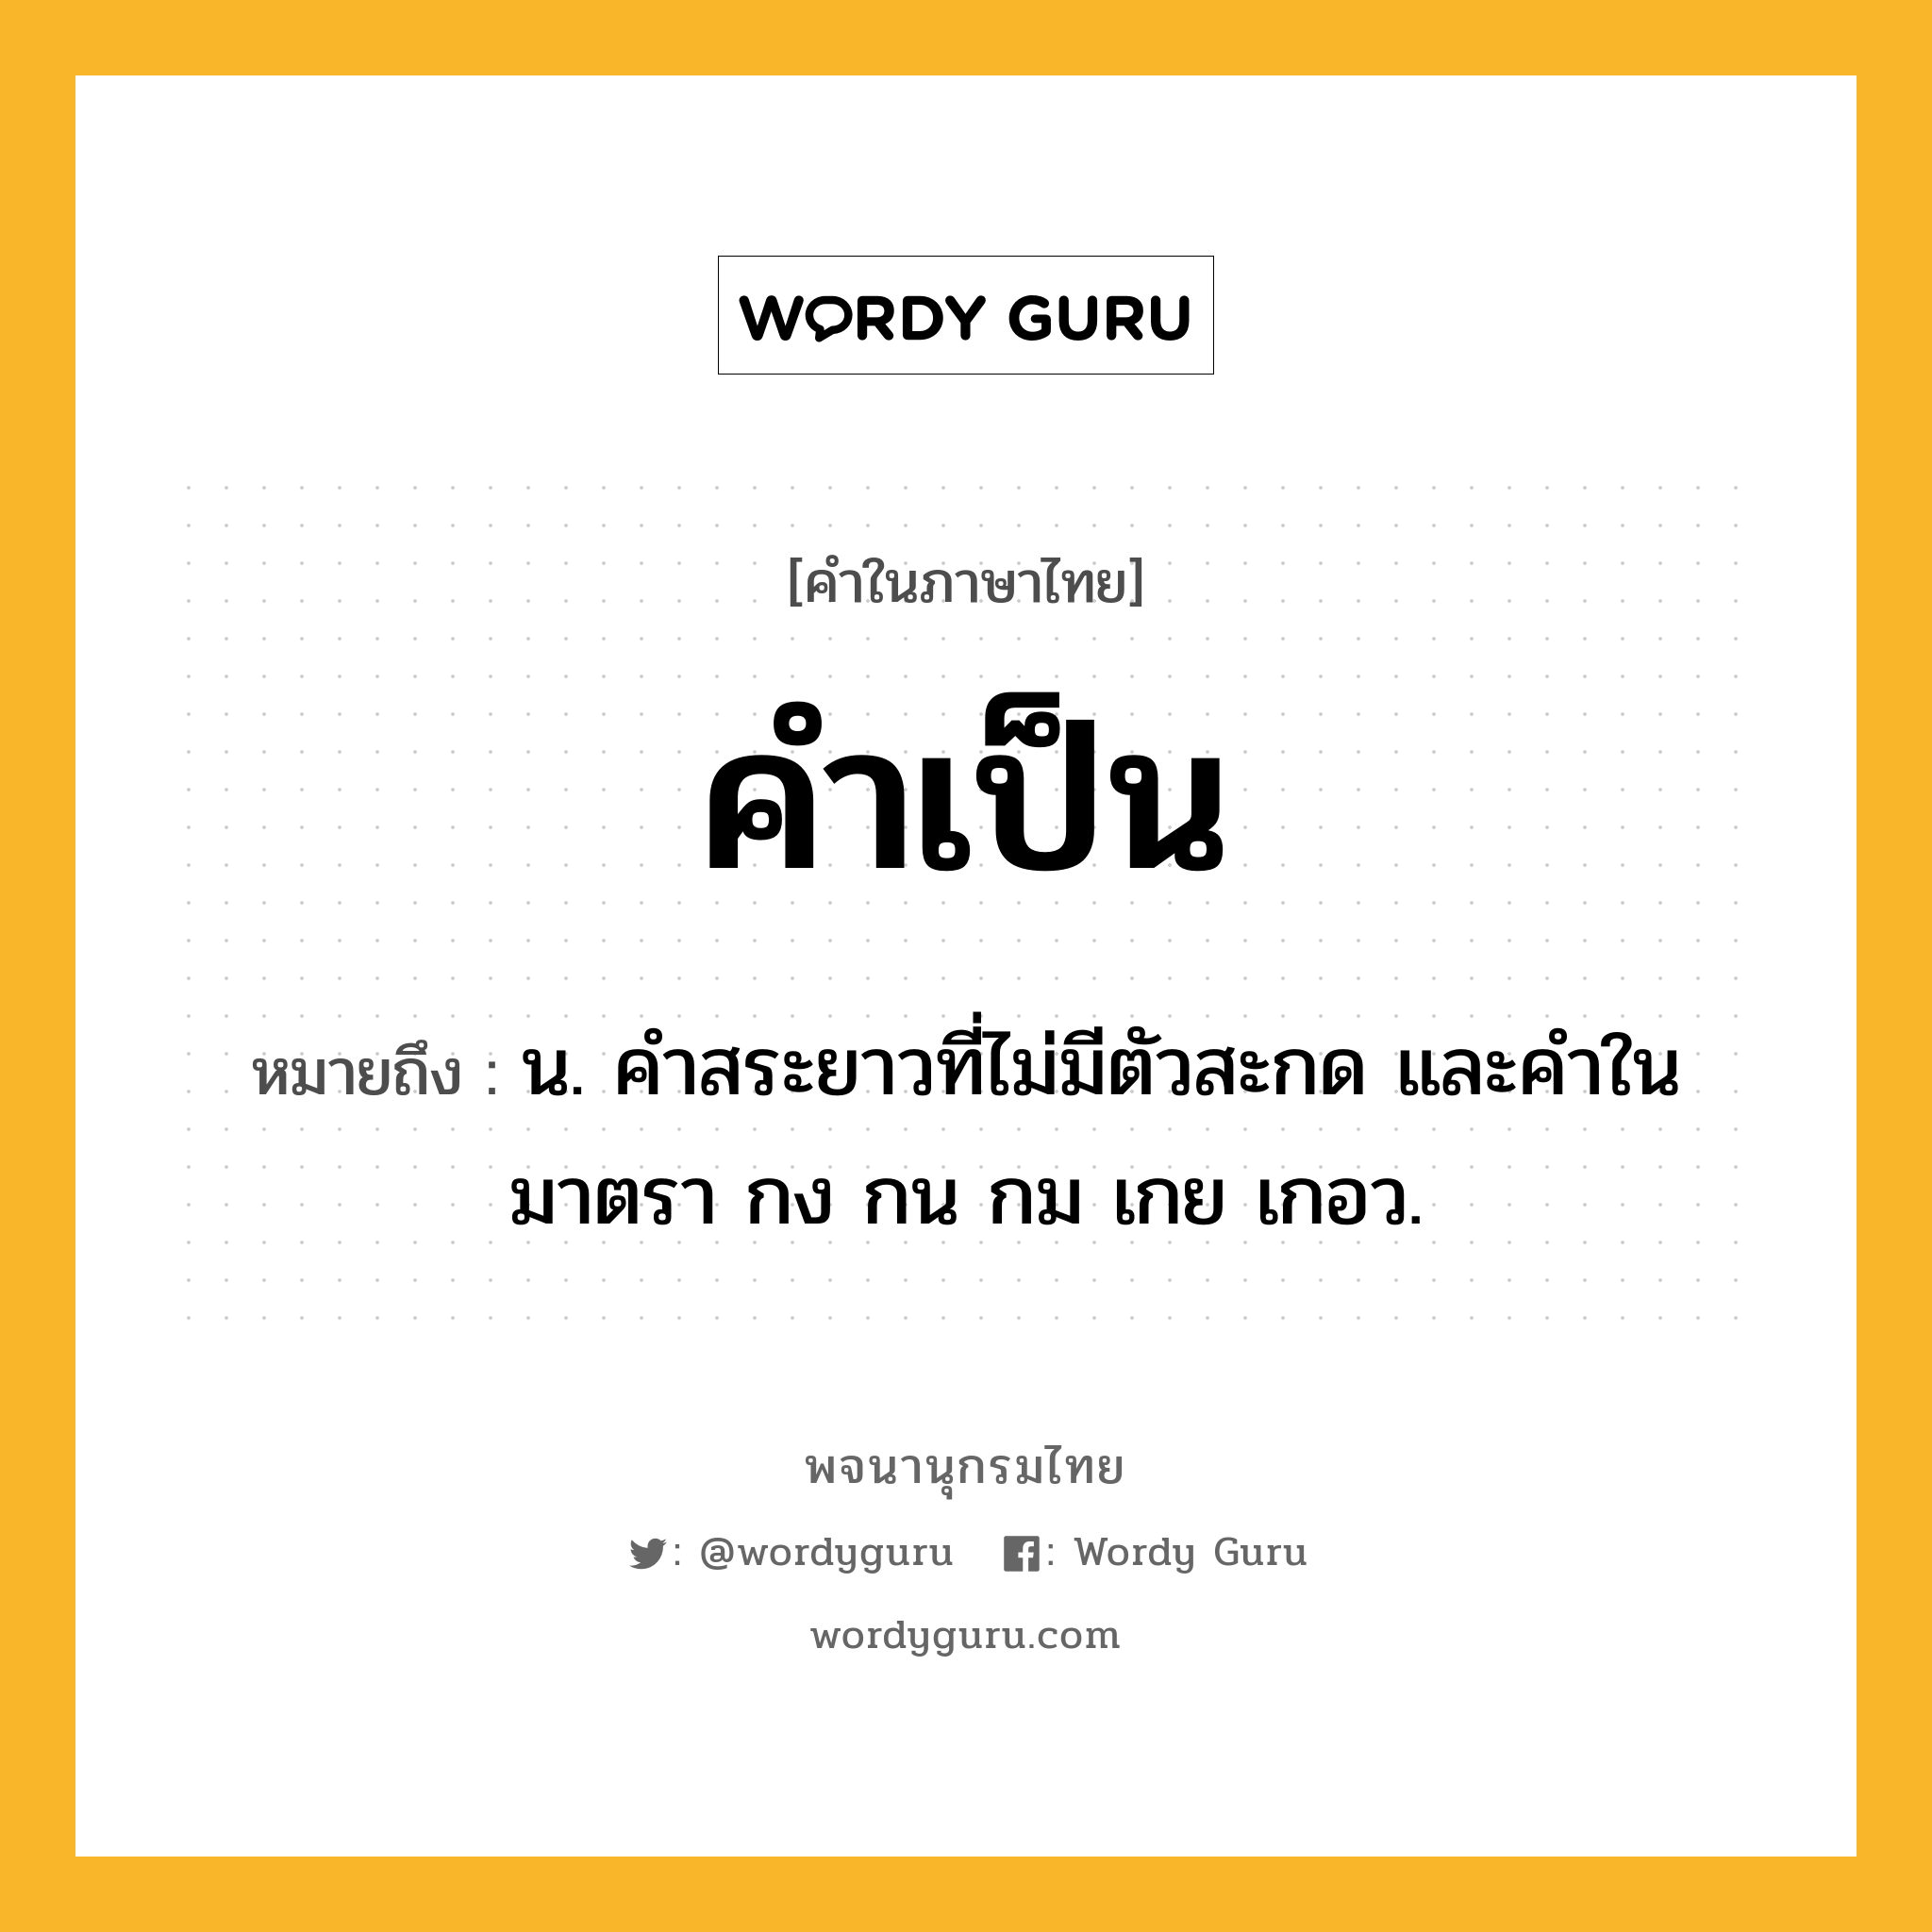 คำเป็น ความหมาย หมายถึงอะไร?, คำในภาษาไทย คำเป็น หมายถึง น. คำสระยาวที่ไม่มีตัวสะกด และคำในมาตรา กง กน กม เกย เกอว.